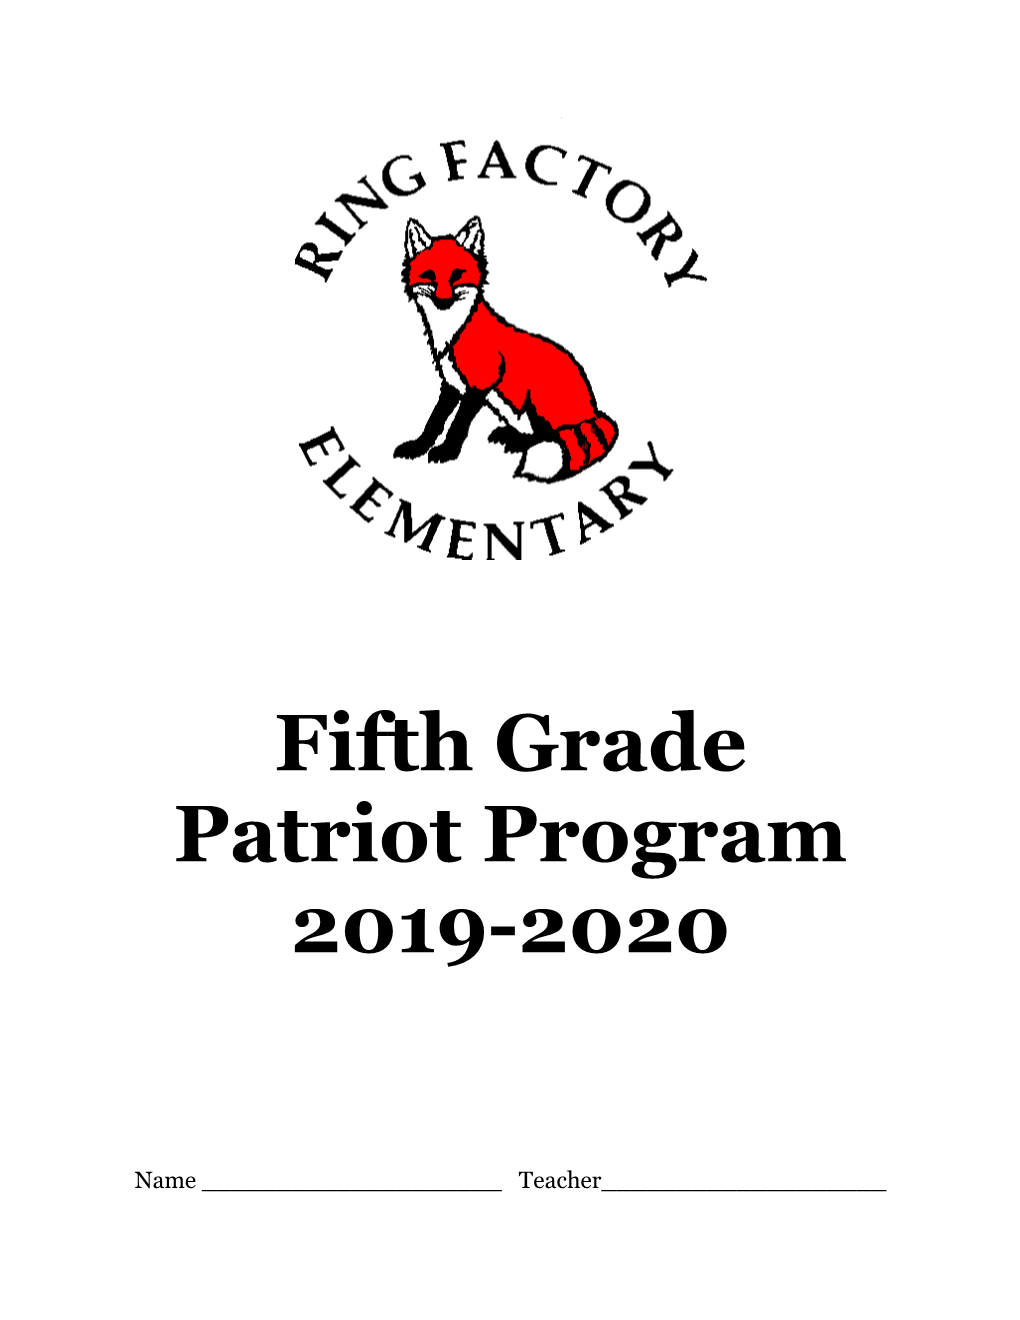 Fifth Grade Patriot Program 2019-2020